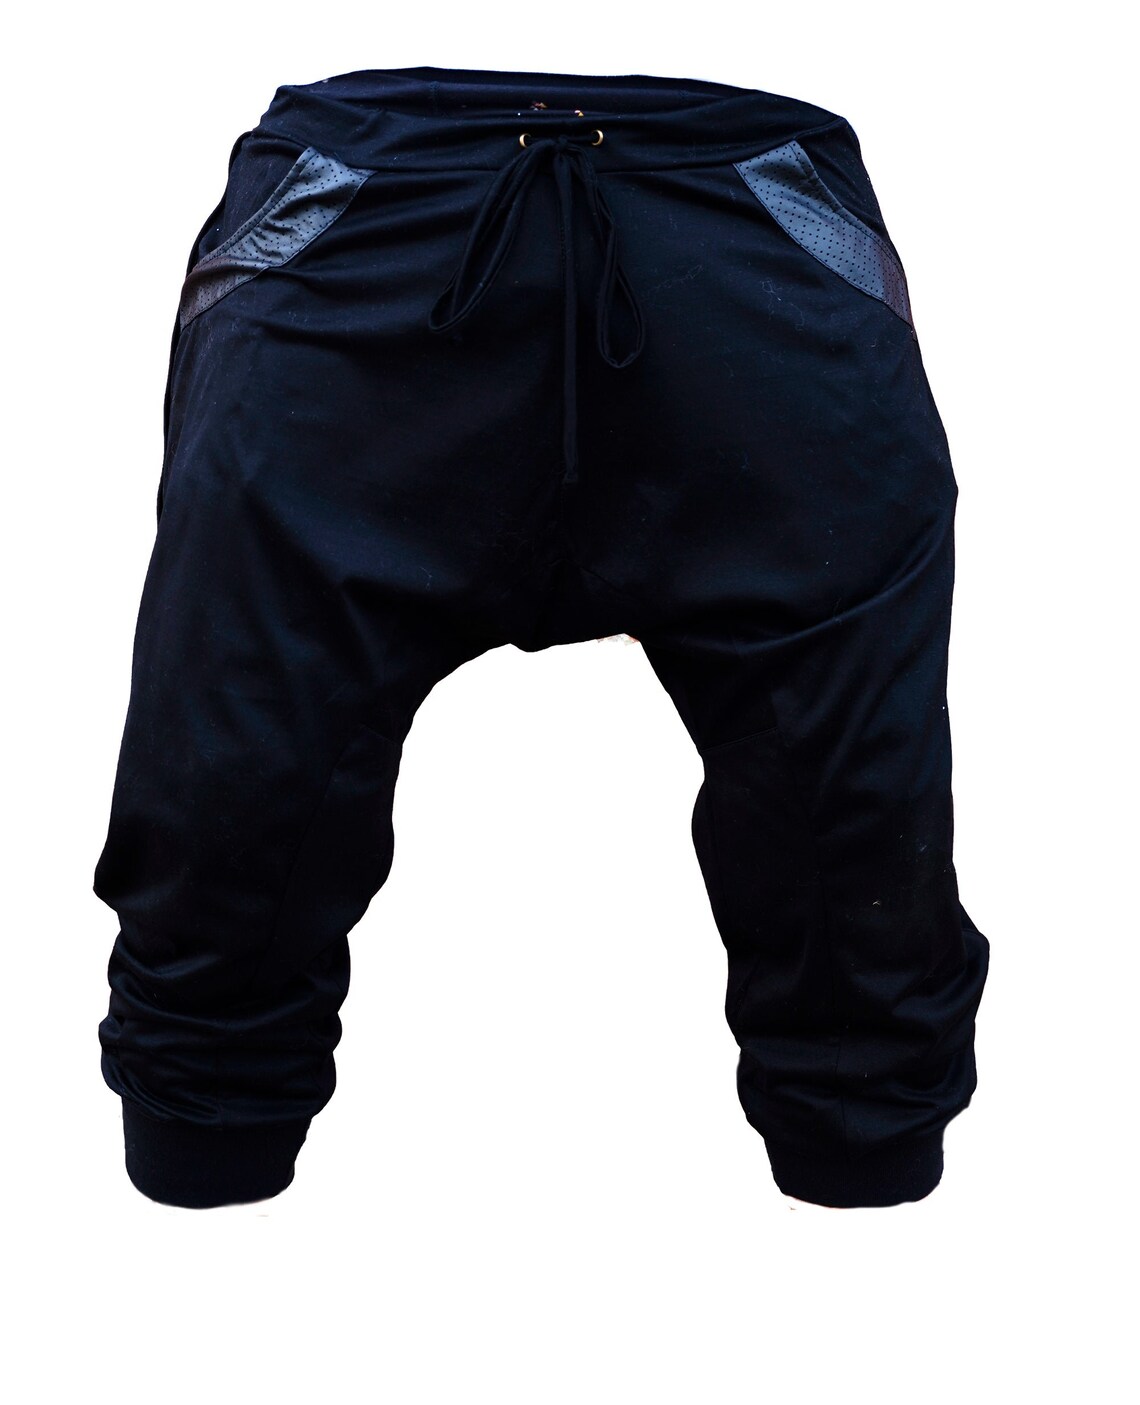 Drop Crotch Pants Men's Pants Yuta Jogger Pant Hip-hop - Etsy